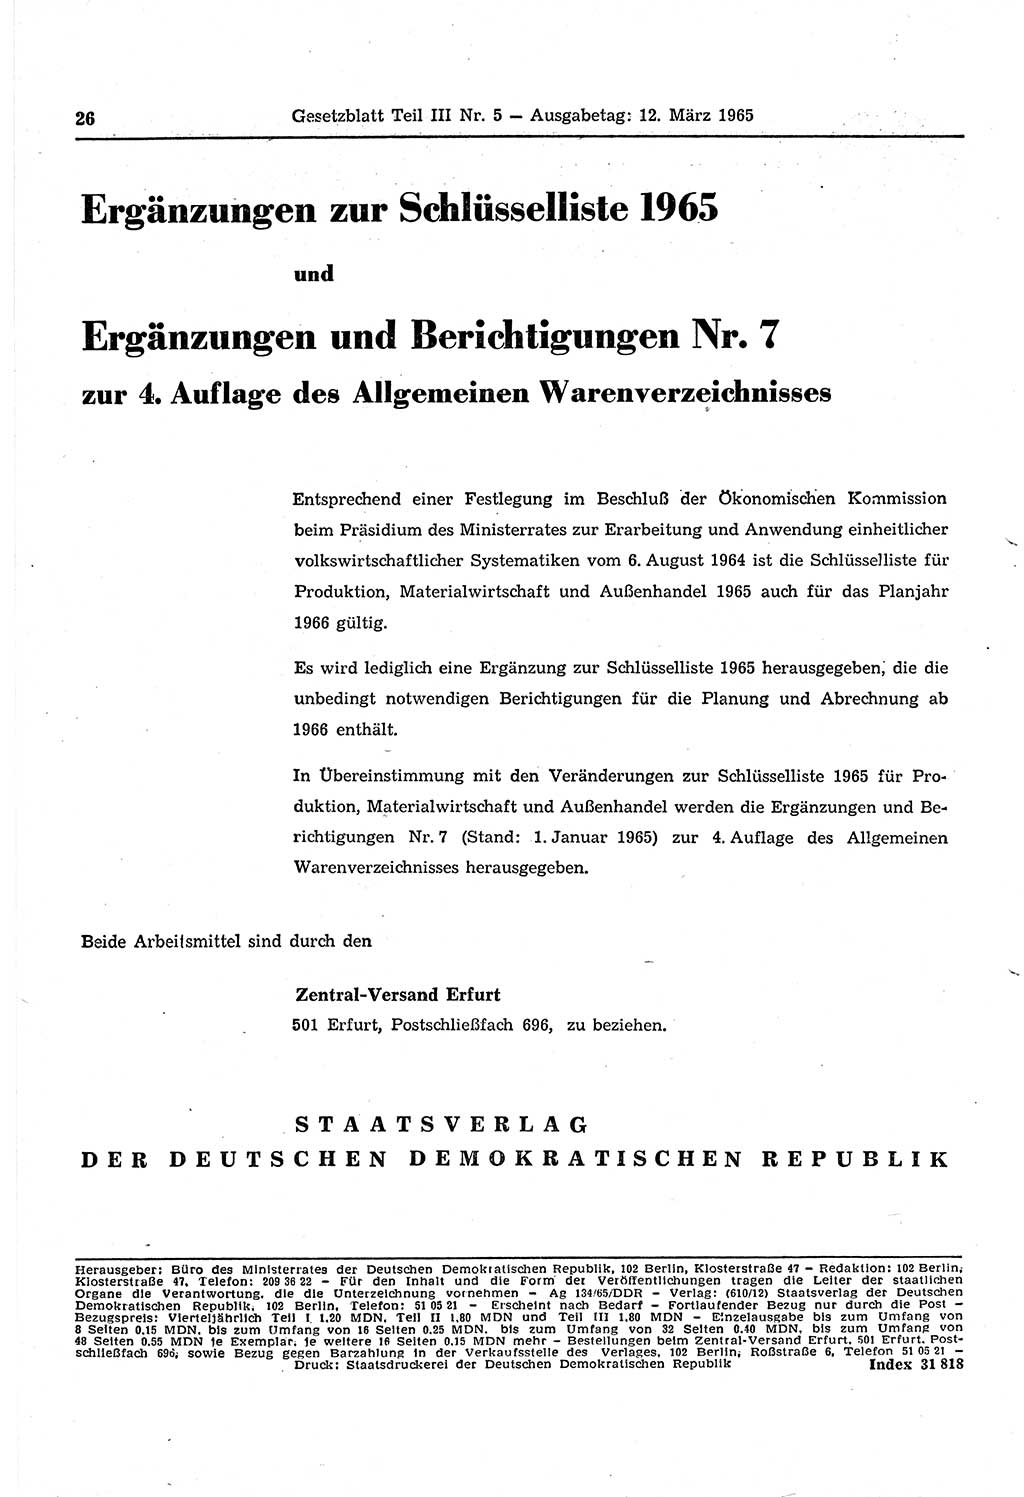 Gesetzblatt (GBl.) der Deutschen Demokratischen Republik (DDR) Teil ⅠⅠⅠ 1965, Seite 26 (GBl. DDR ⅠⅠⅠ 1965, S. 26)